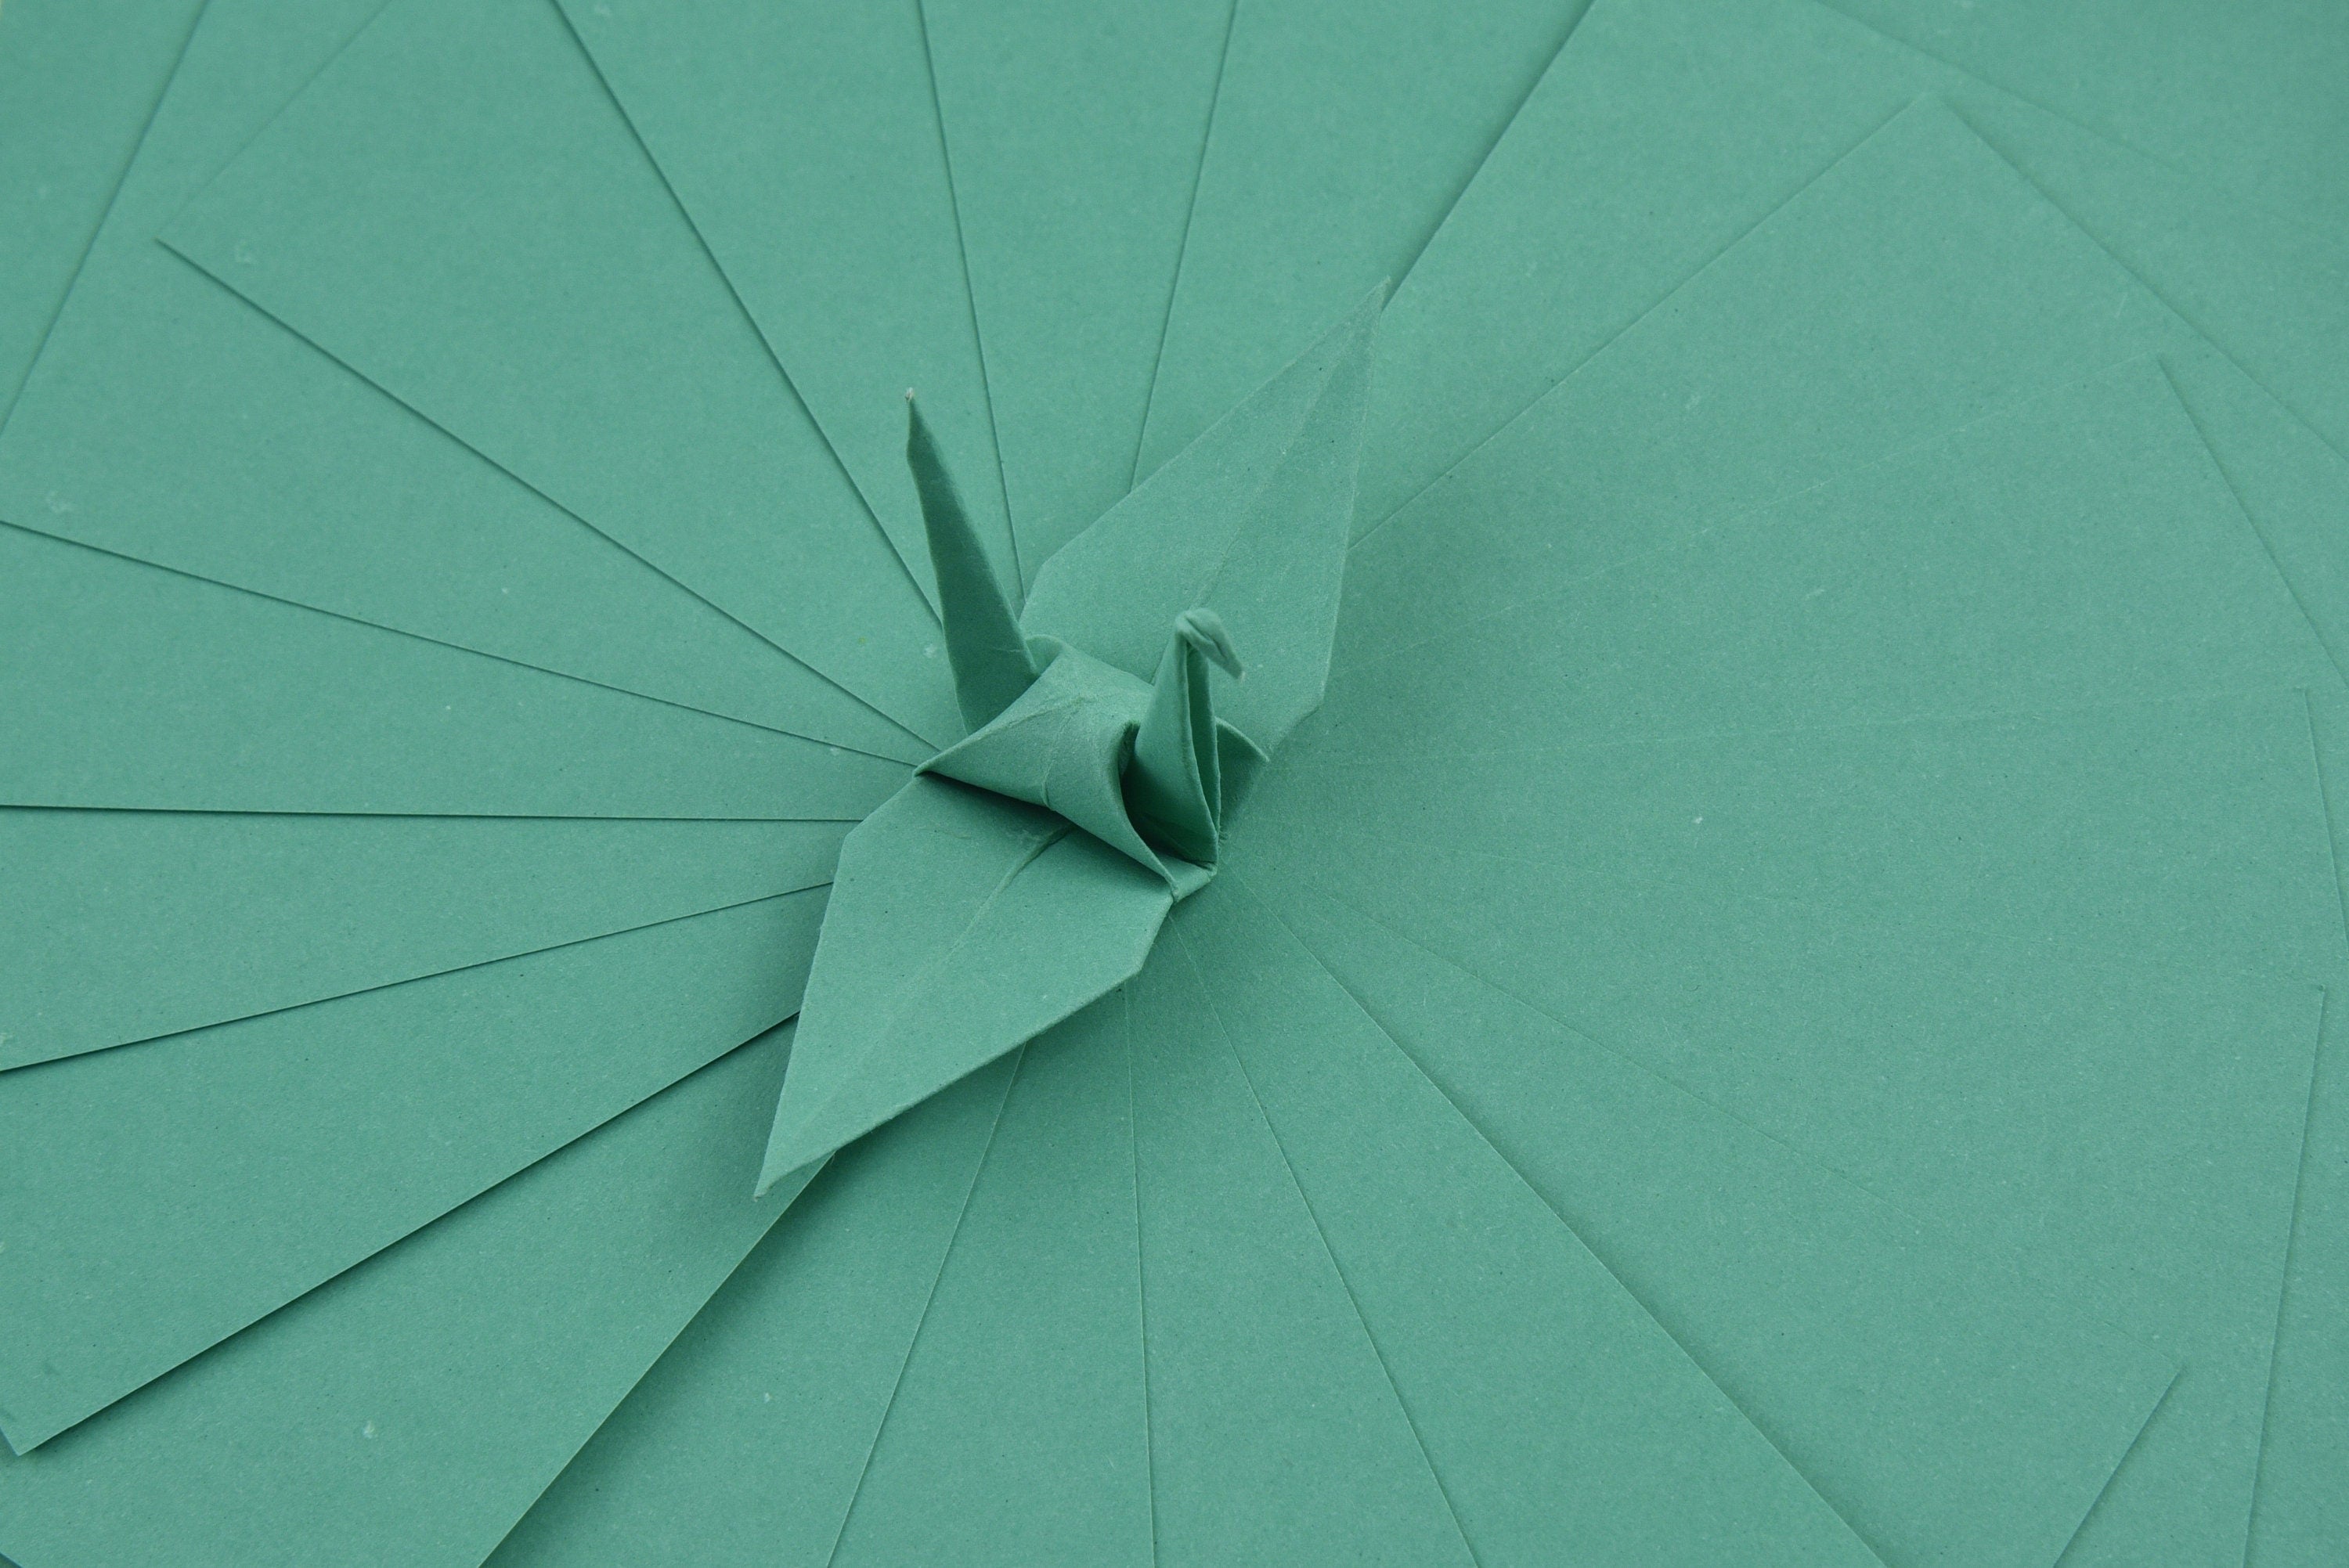 100 Hojas de Papel Origami - 3x3 pulgadas - Paquete de Papel Cuadrado para Plegar, Grullas de Origami y Decoración - S21